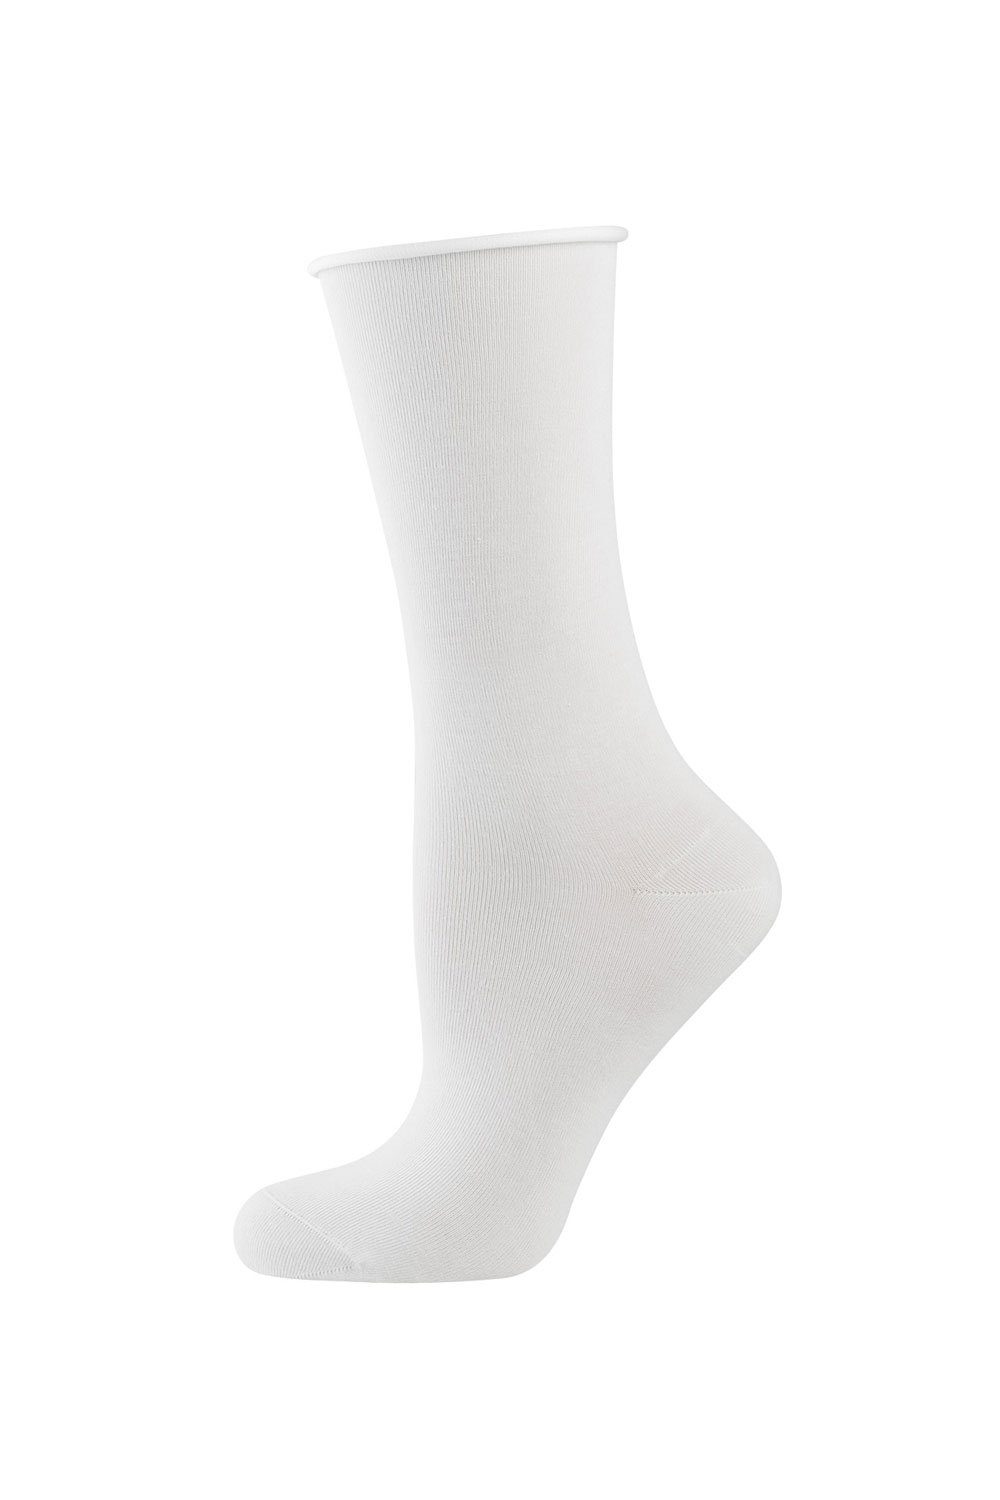 Elbeo Socken Light Cotton Rollbund-Socken 938303 weiß